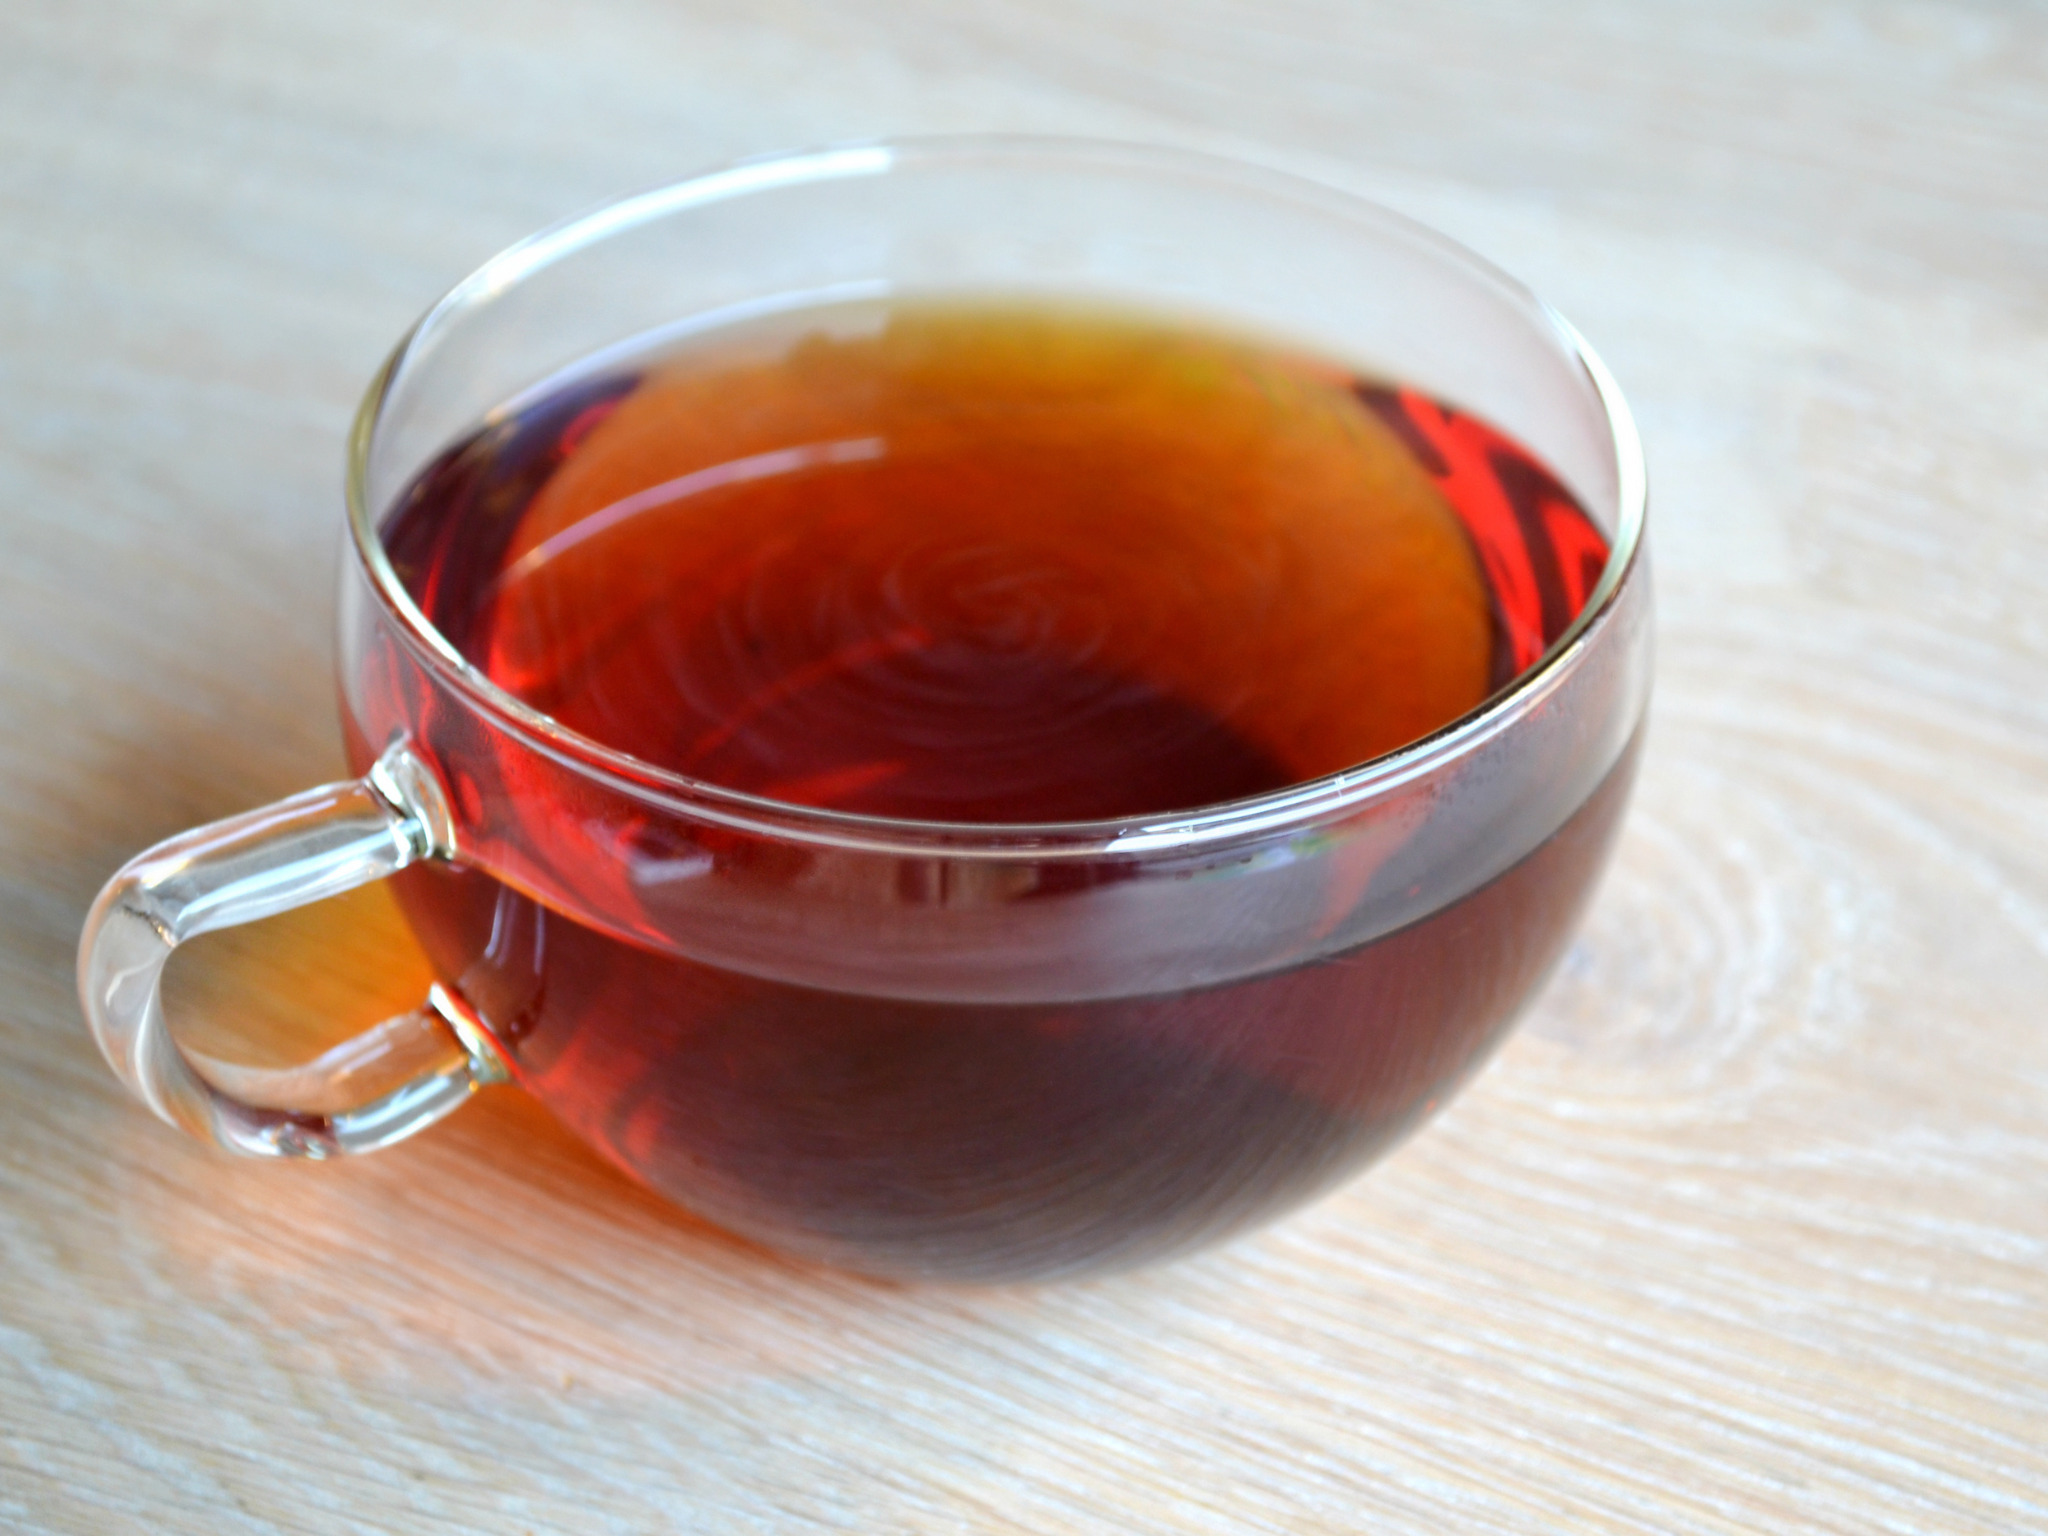 和紅茶<br>Japanese Black Tea【HOT/ICE】